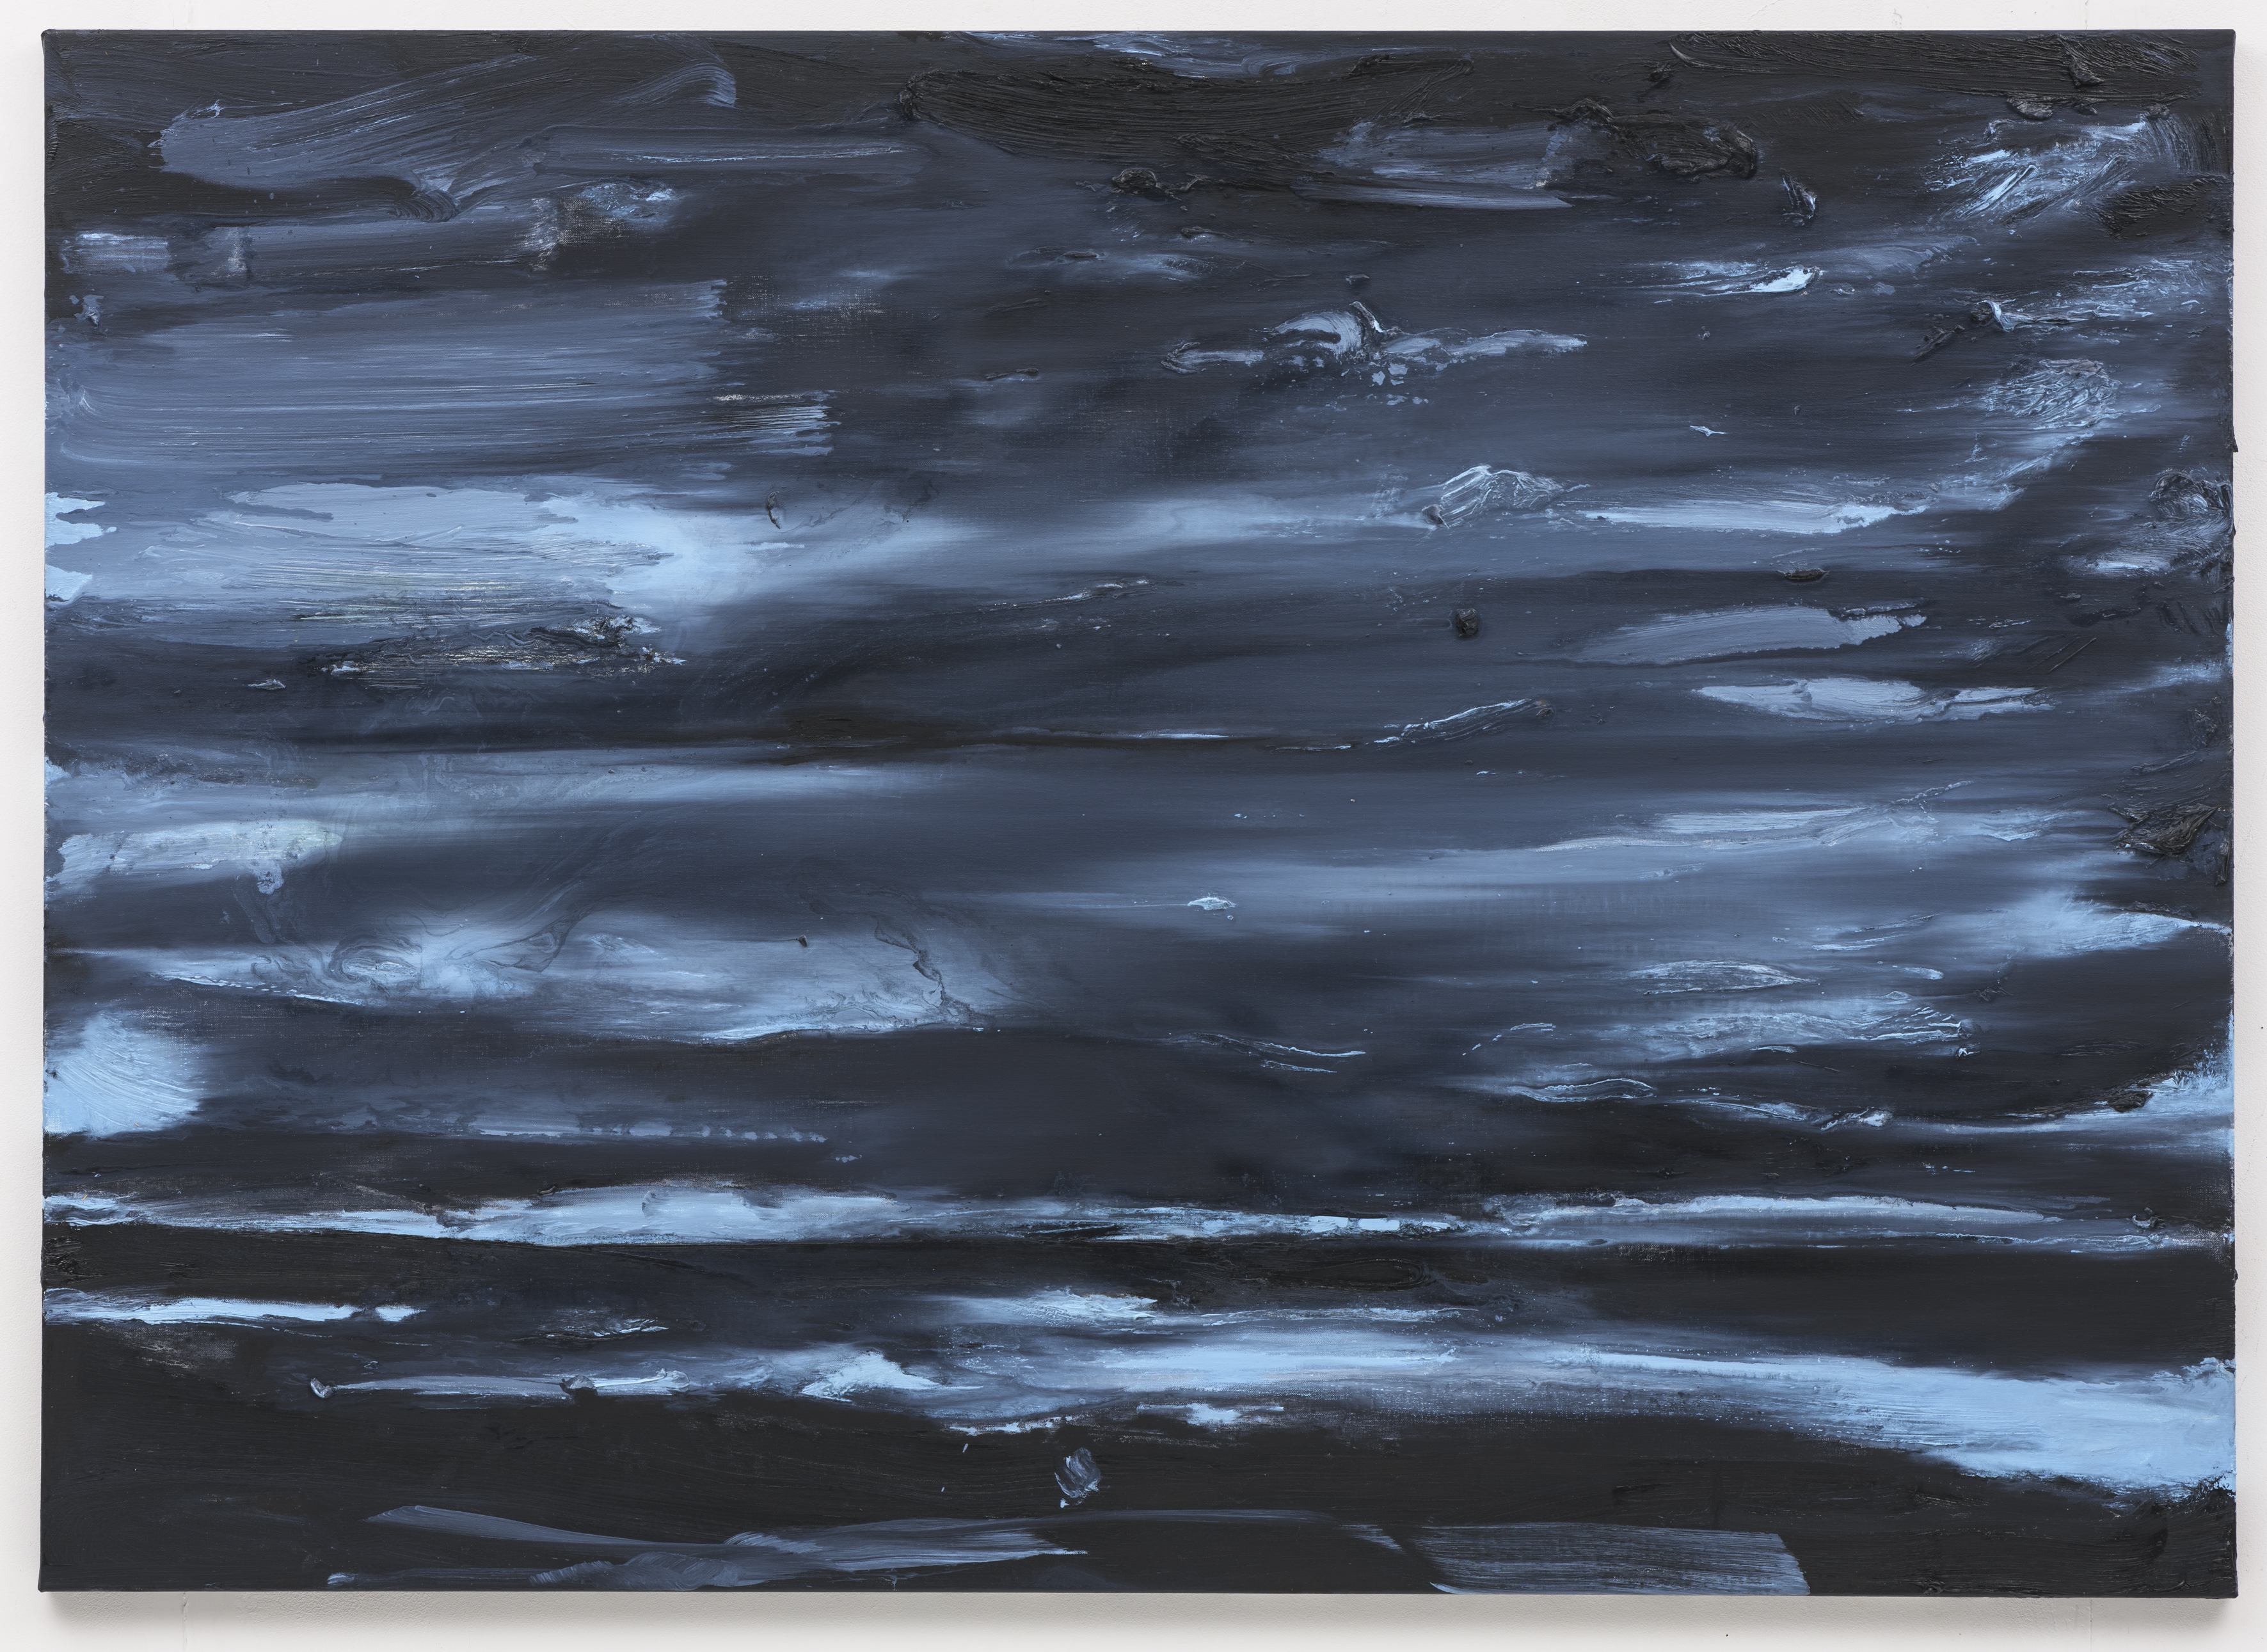 "Zee van Ruimte II", 100 x 140 cm. oil on linen 2018 (Berlin)